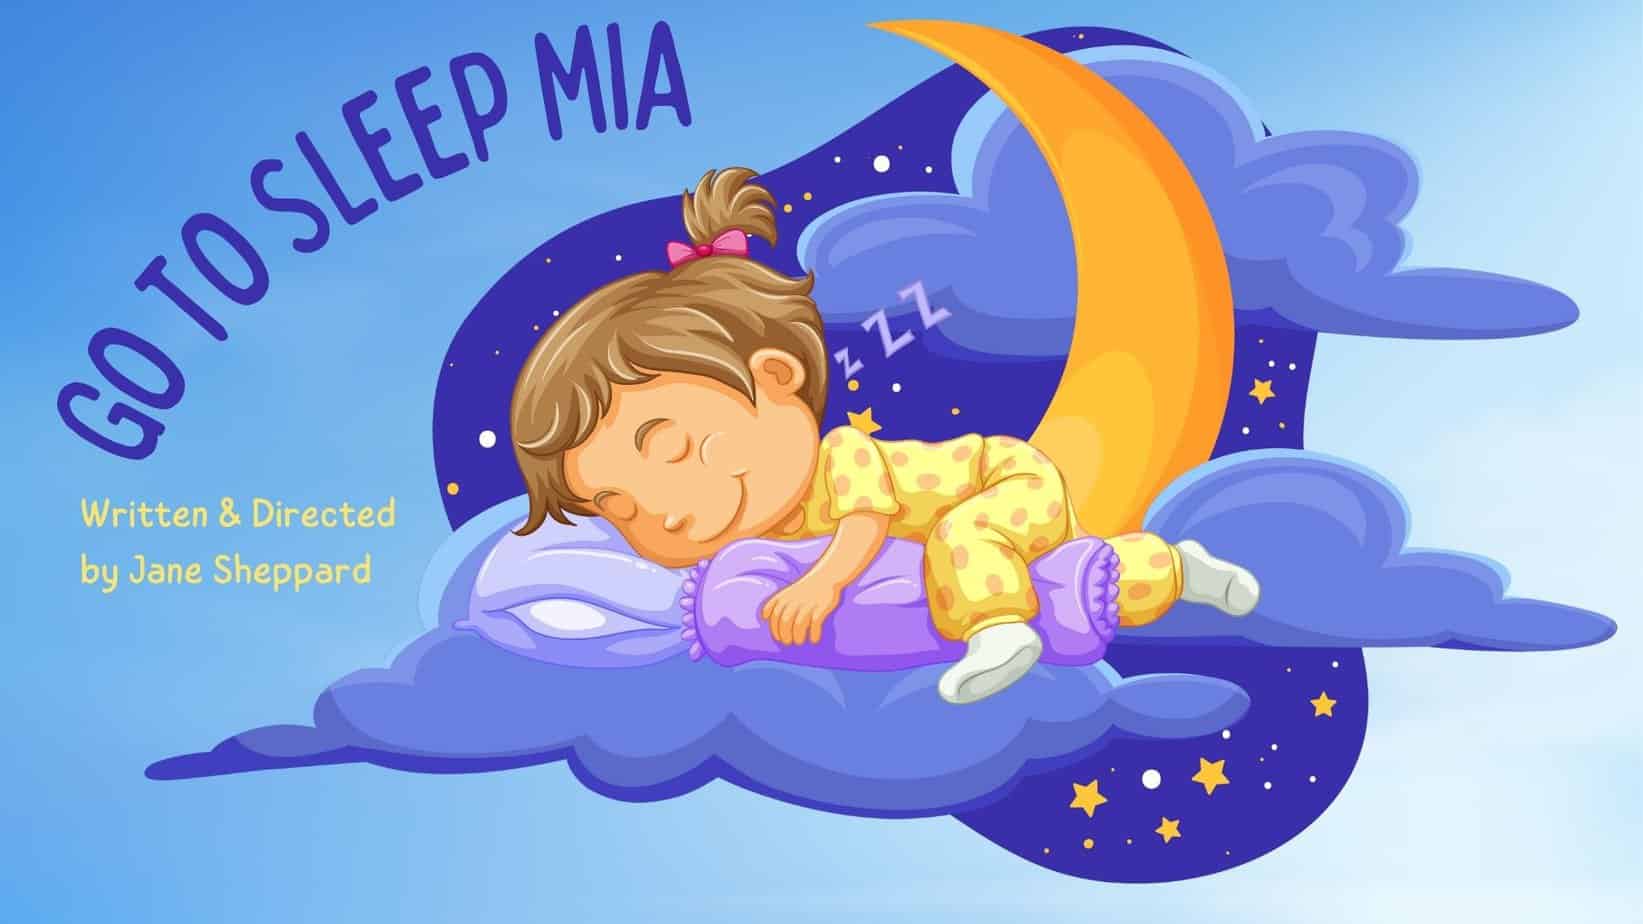 Go to Sleep Mia